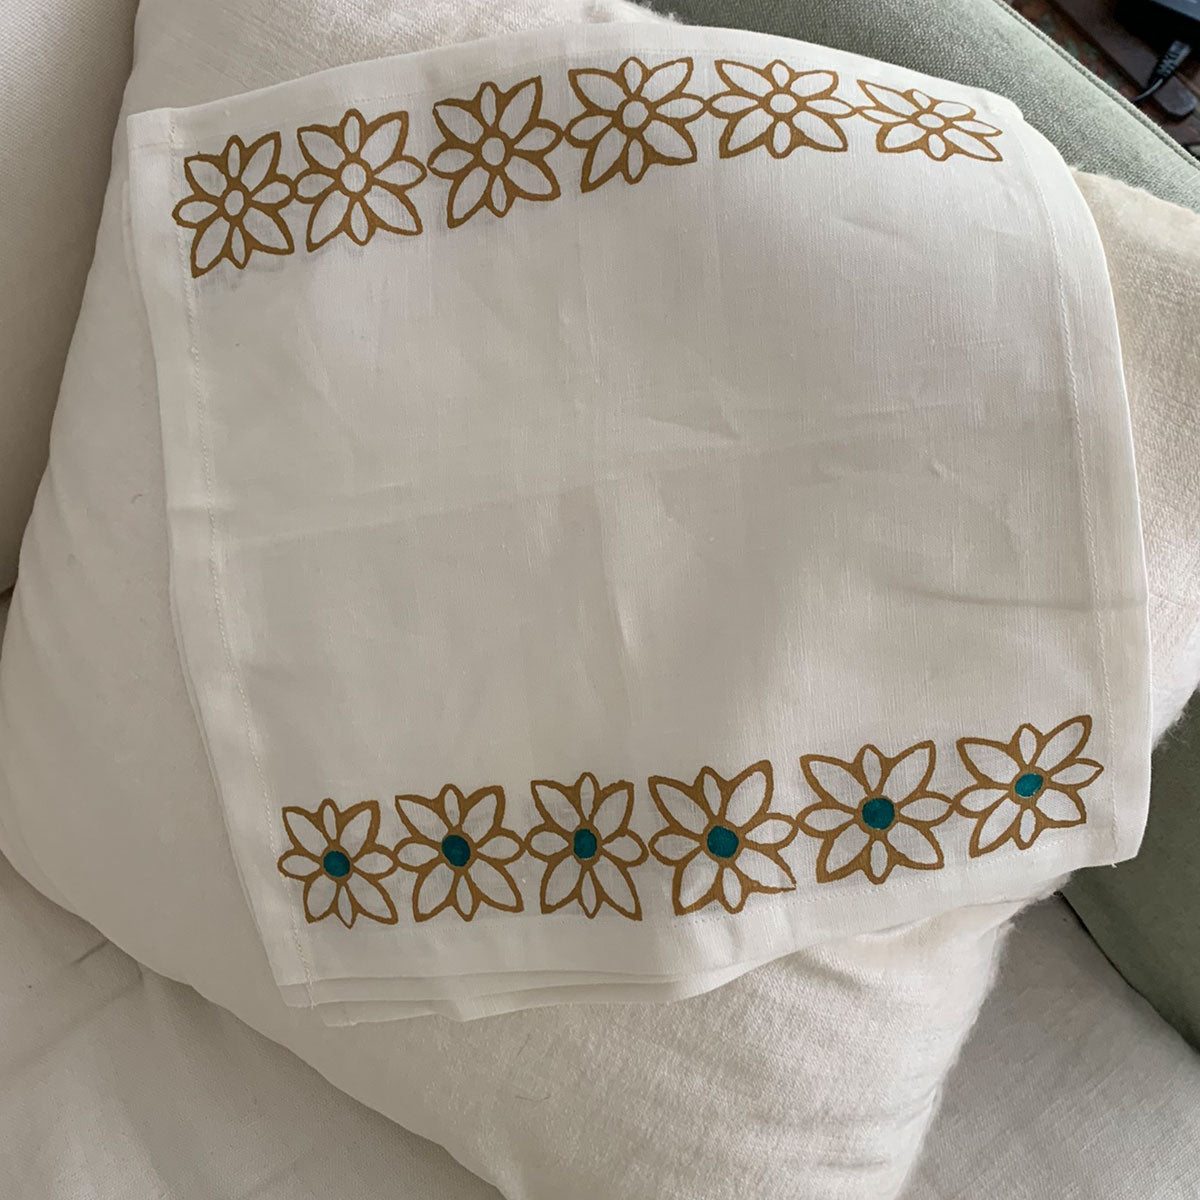 white and ocher block print linen napkins